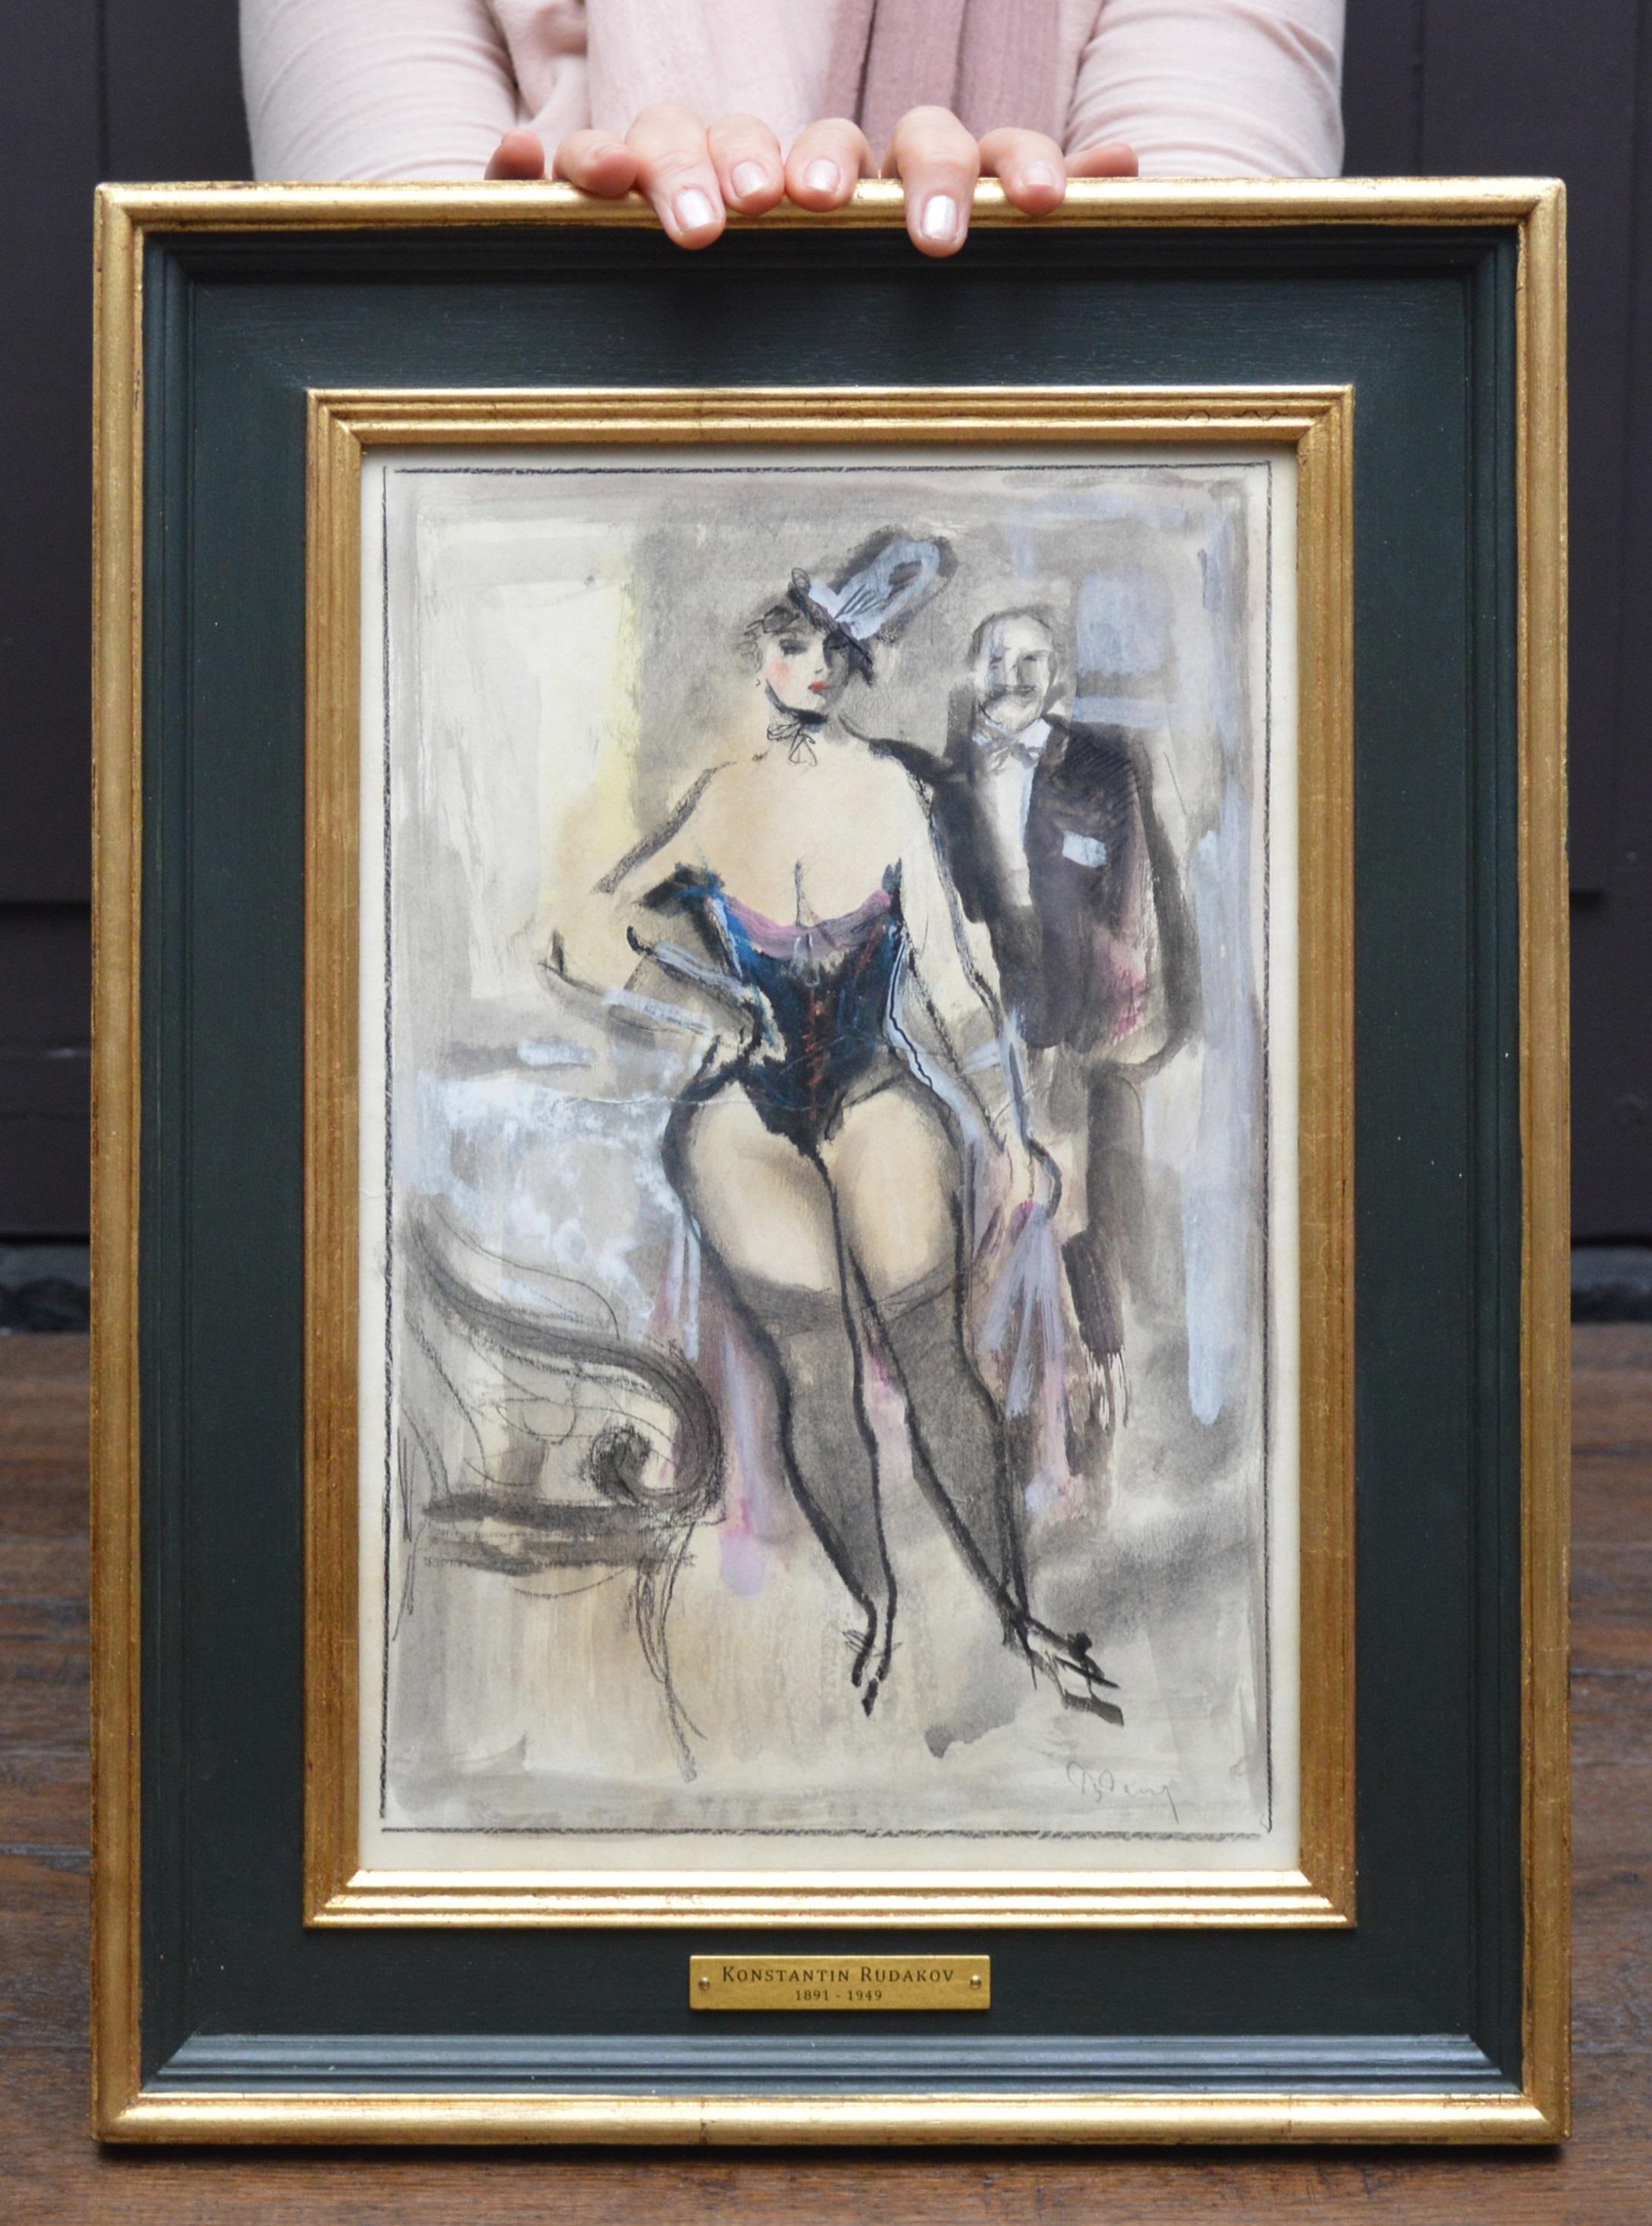 Post-Impressionist 1930s Babylon Berlin Bordello Scene of Cabaret Girl & Client - Art by Konstantin Rudakov